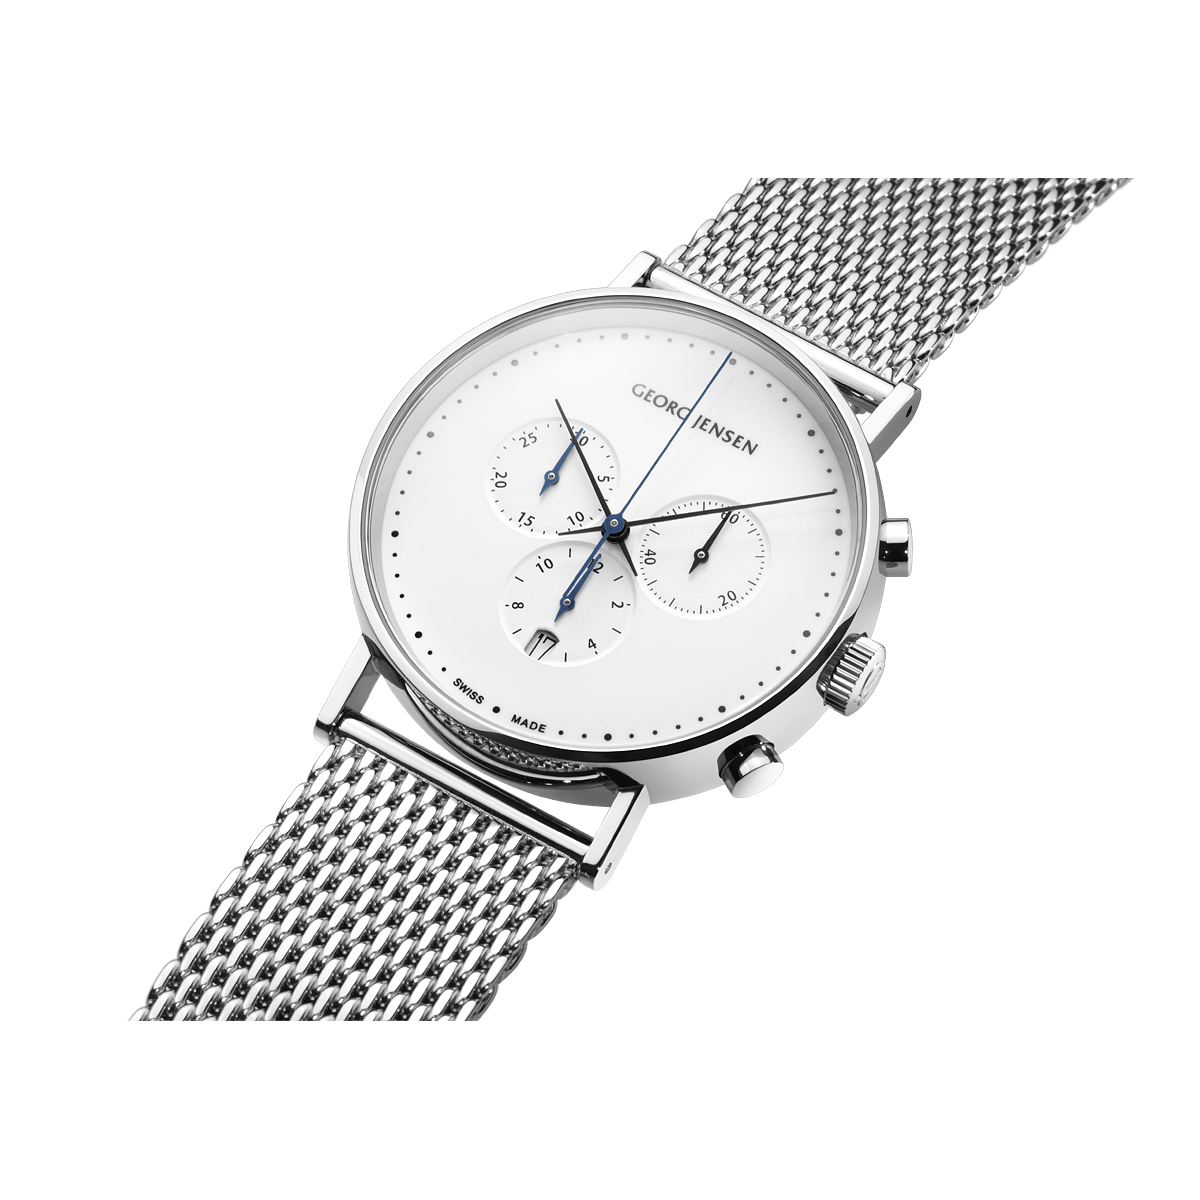 35,100円[George jensen] 歴史的価値 ジョージ・ジェンセン 腕時計